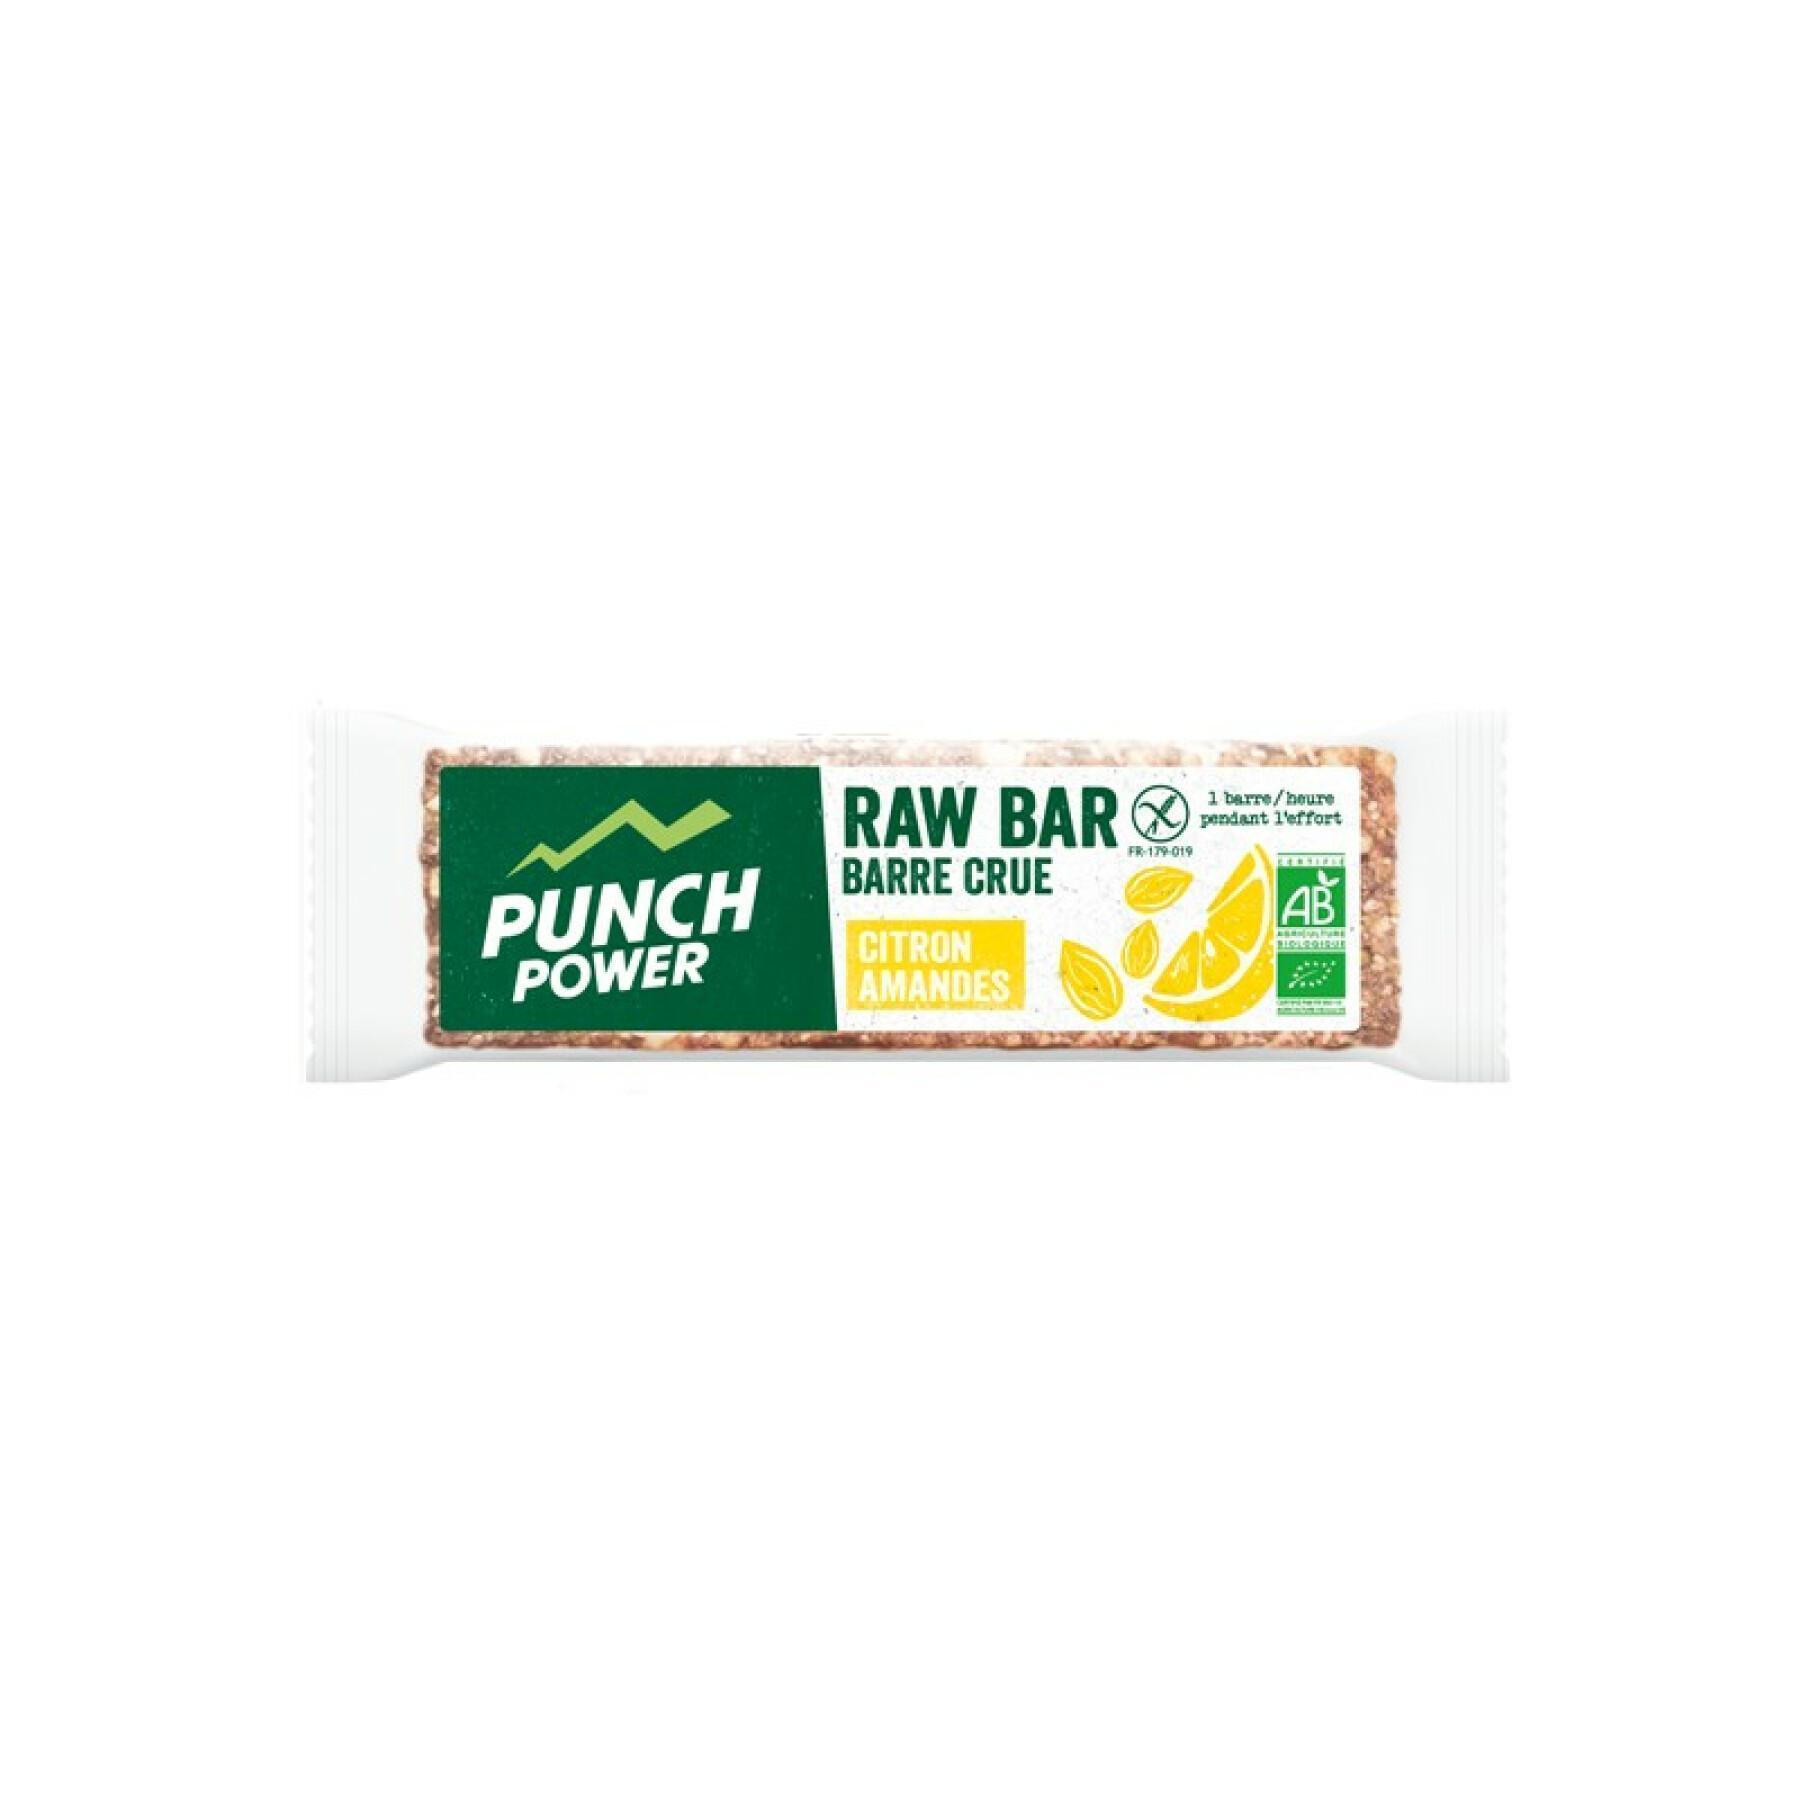 Muestra 20 barras de energía Punch Power Rawbar Citron amande